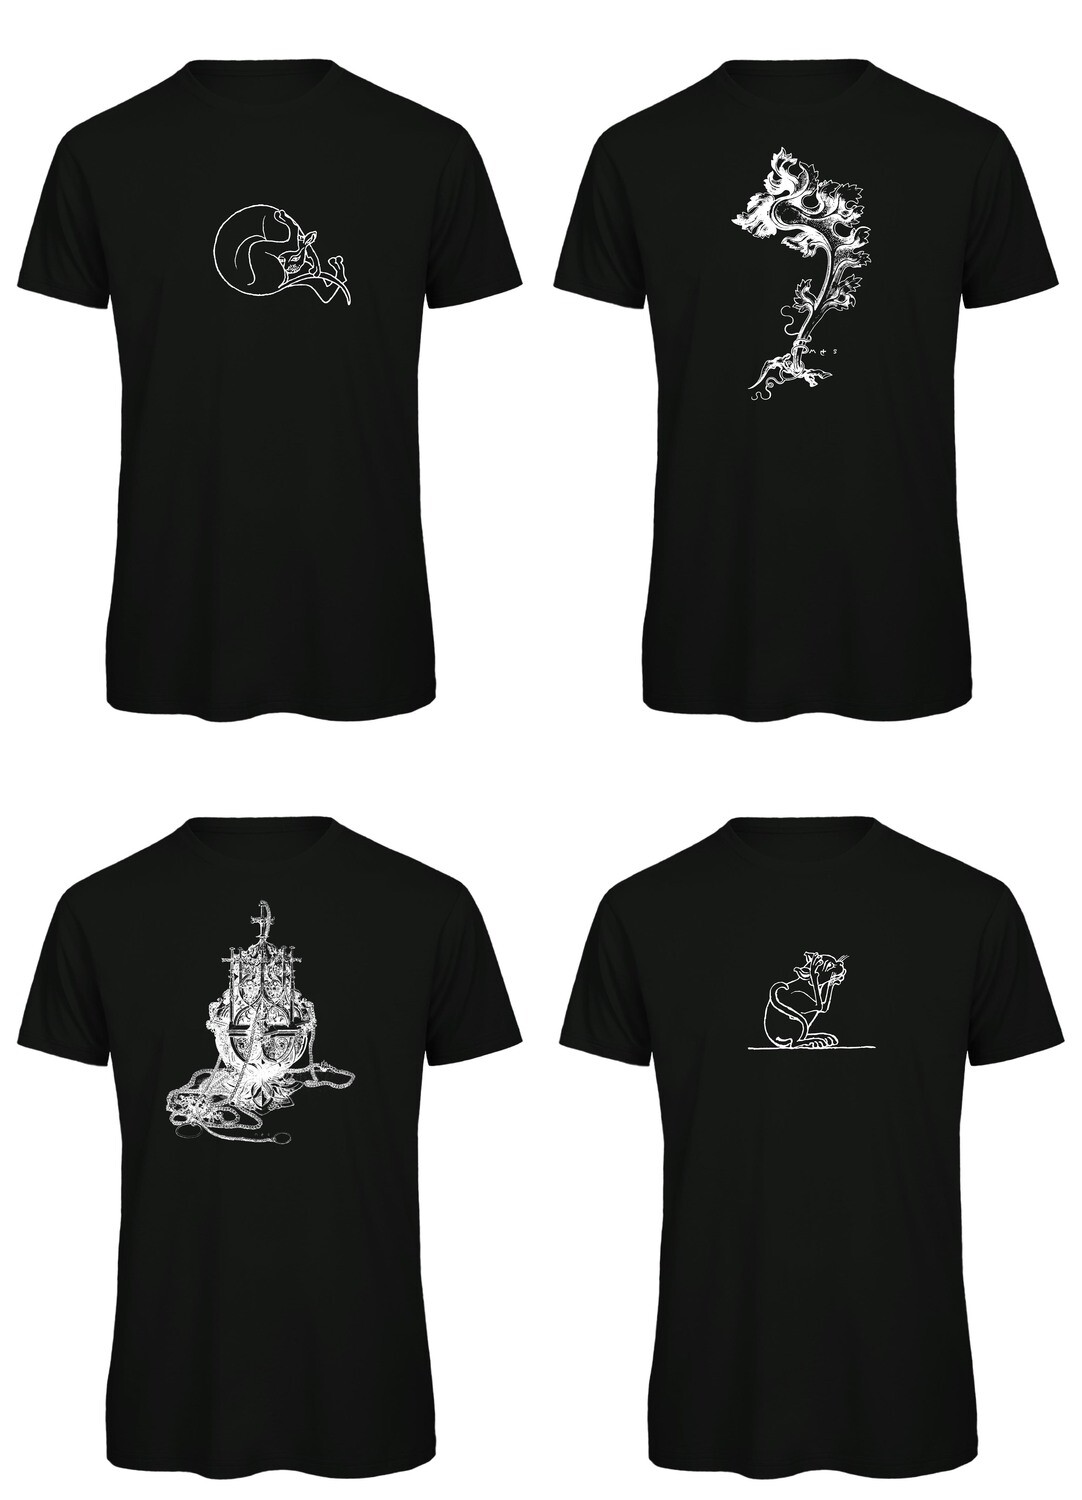 Bio T- Shirt Siebdruck, 4 Motive auf schwarz, bis 5XL